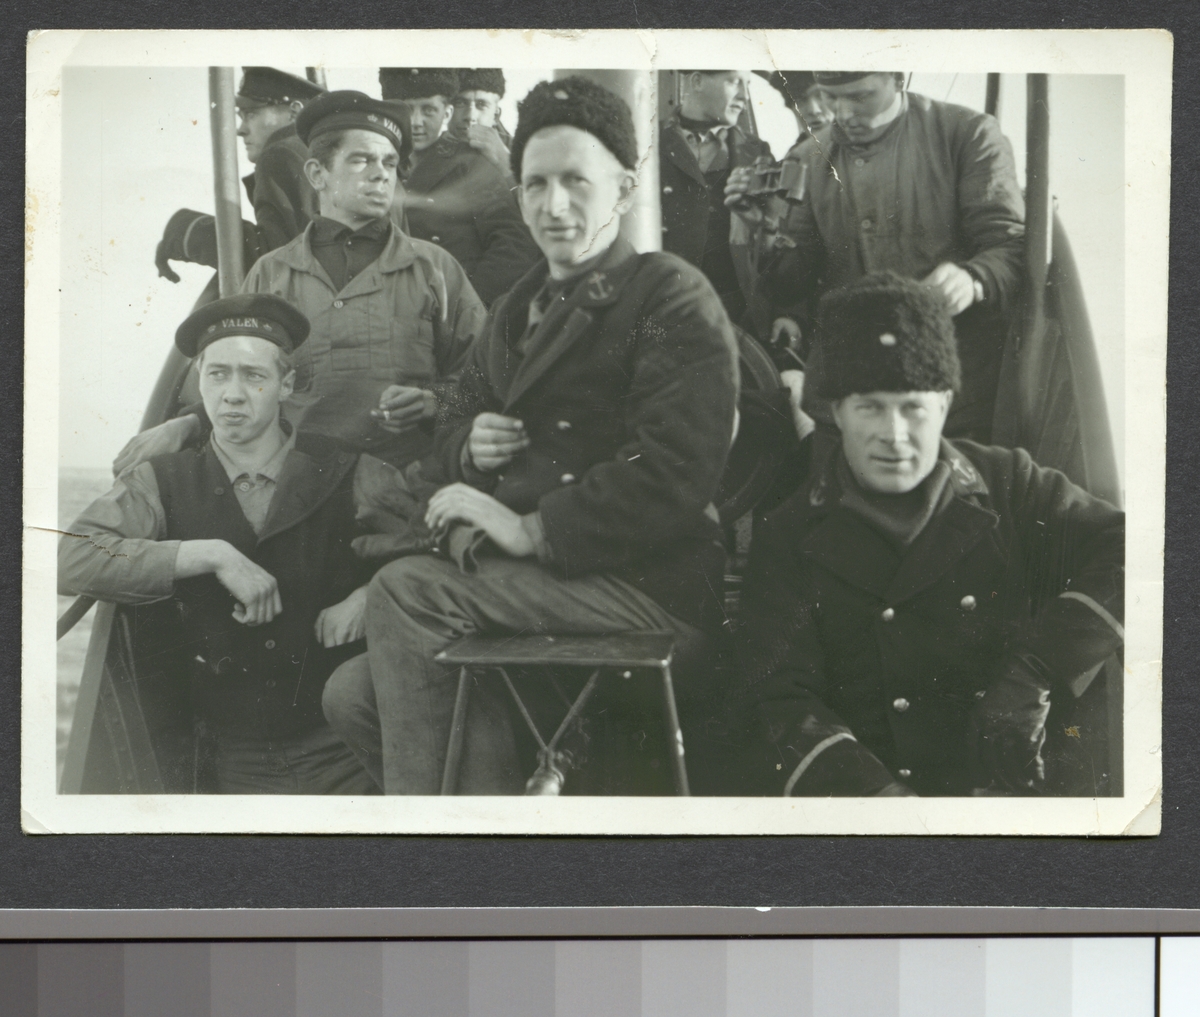 Bilden visar besättningsmän från ubåten Valen som har samlats för ett gruppfoto.